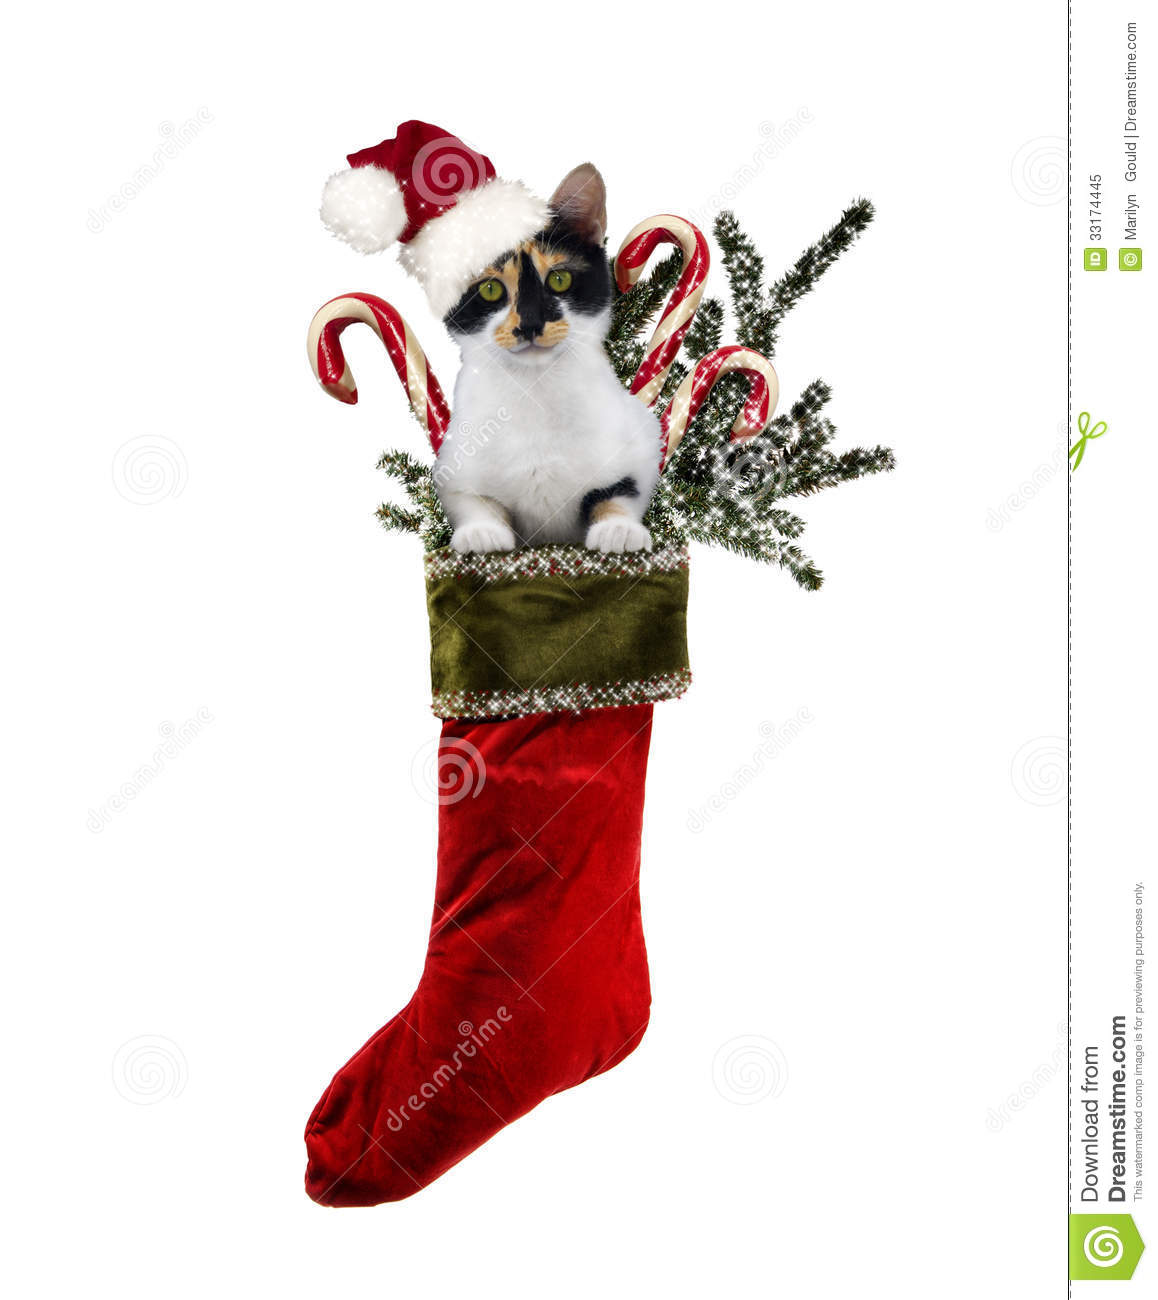 Christmas Cat Stocking Royalty Free Stock Photo   Image  33174445